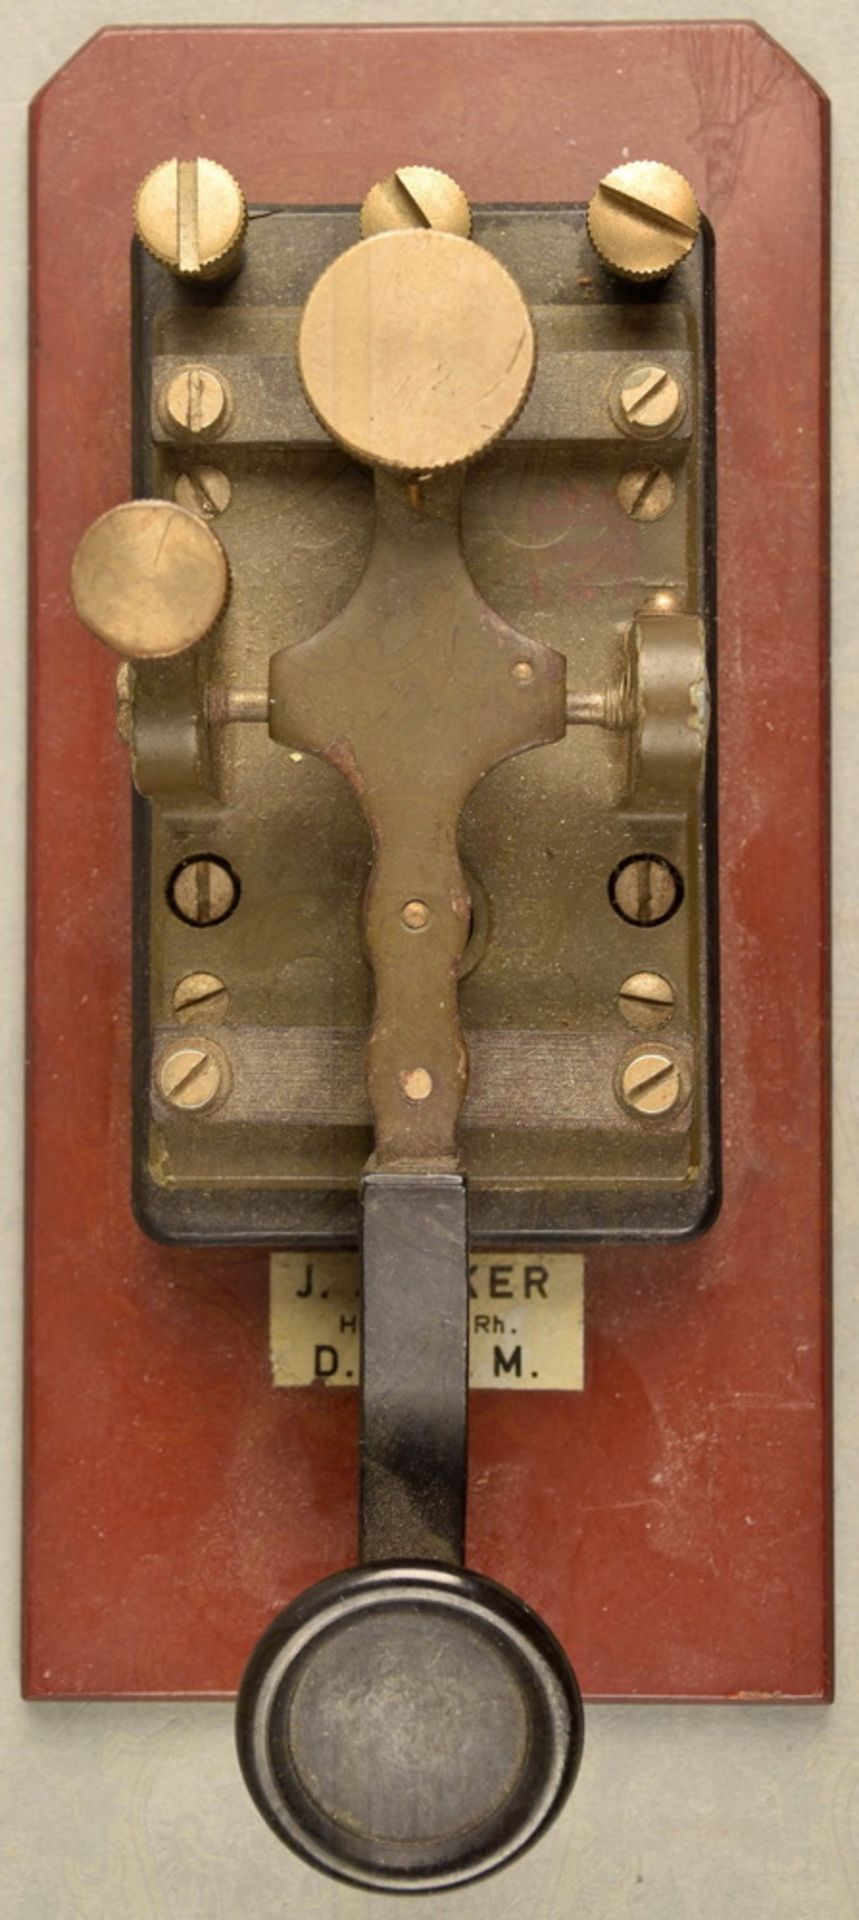 Junker-Morsegerät mit Kopfhörer - Image 2 of 3